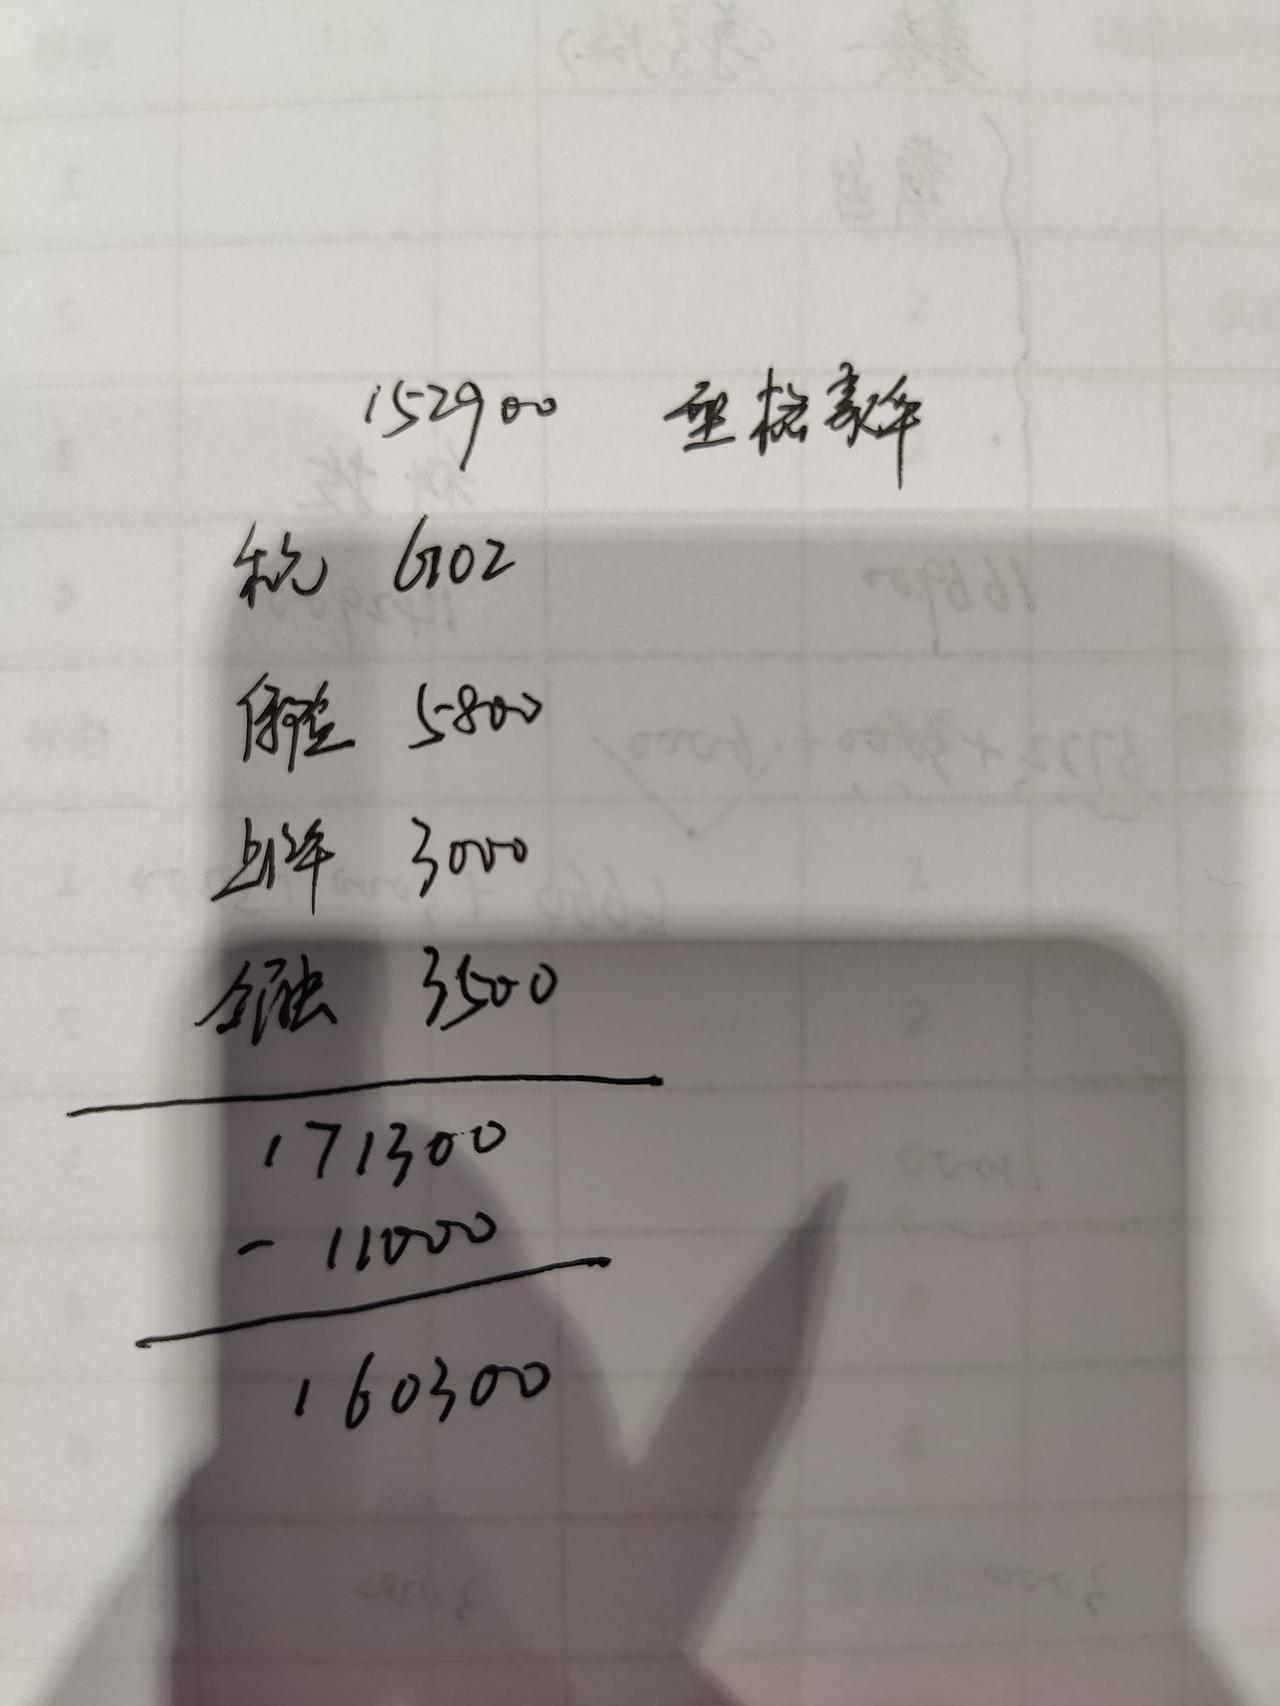 广州型格豪华版全款落地16个，首付6W贷10W分36期算上利息落地在17个左右，今天刚去问的，这个价格是不是太贵了？分期